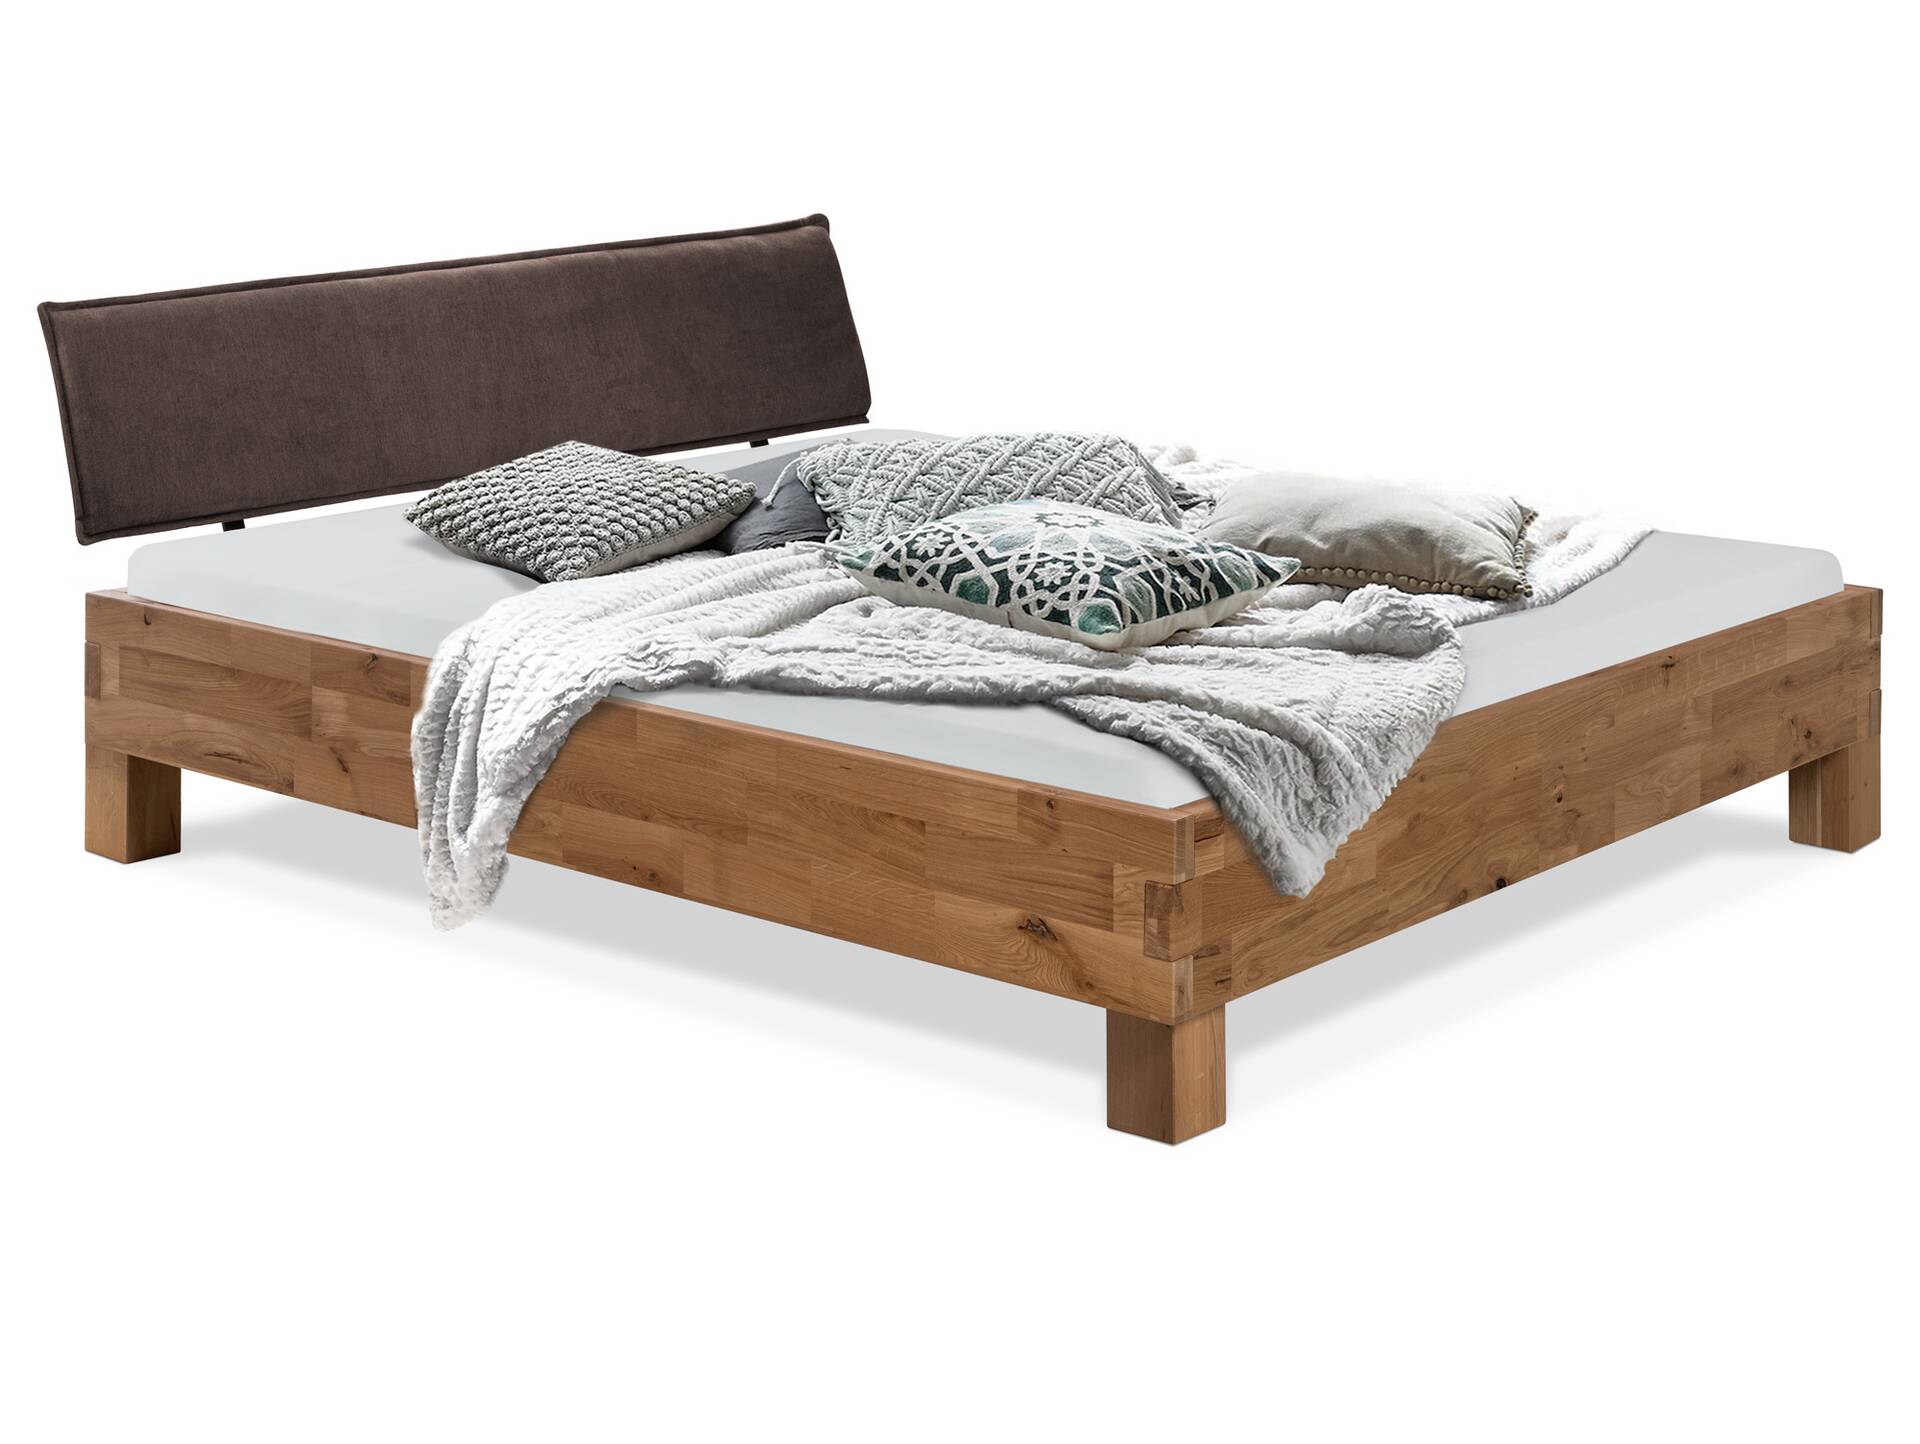 CORDINO 4-Fuß-Bett aus Eiche mit Polster-Kopfteil, Material Massivholz 140 x 220 cm | Eiche lackiert | Stoff Braun | gebürstet